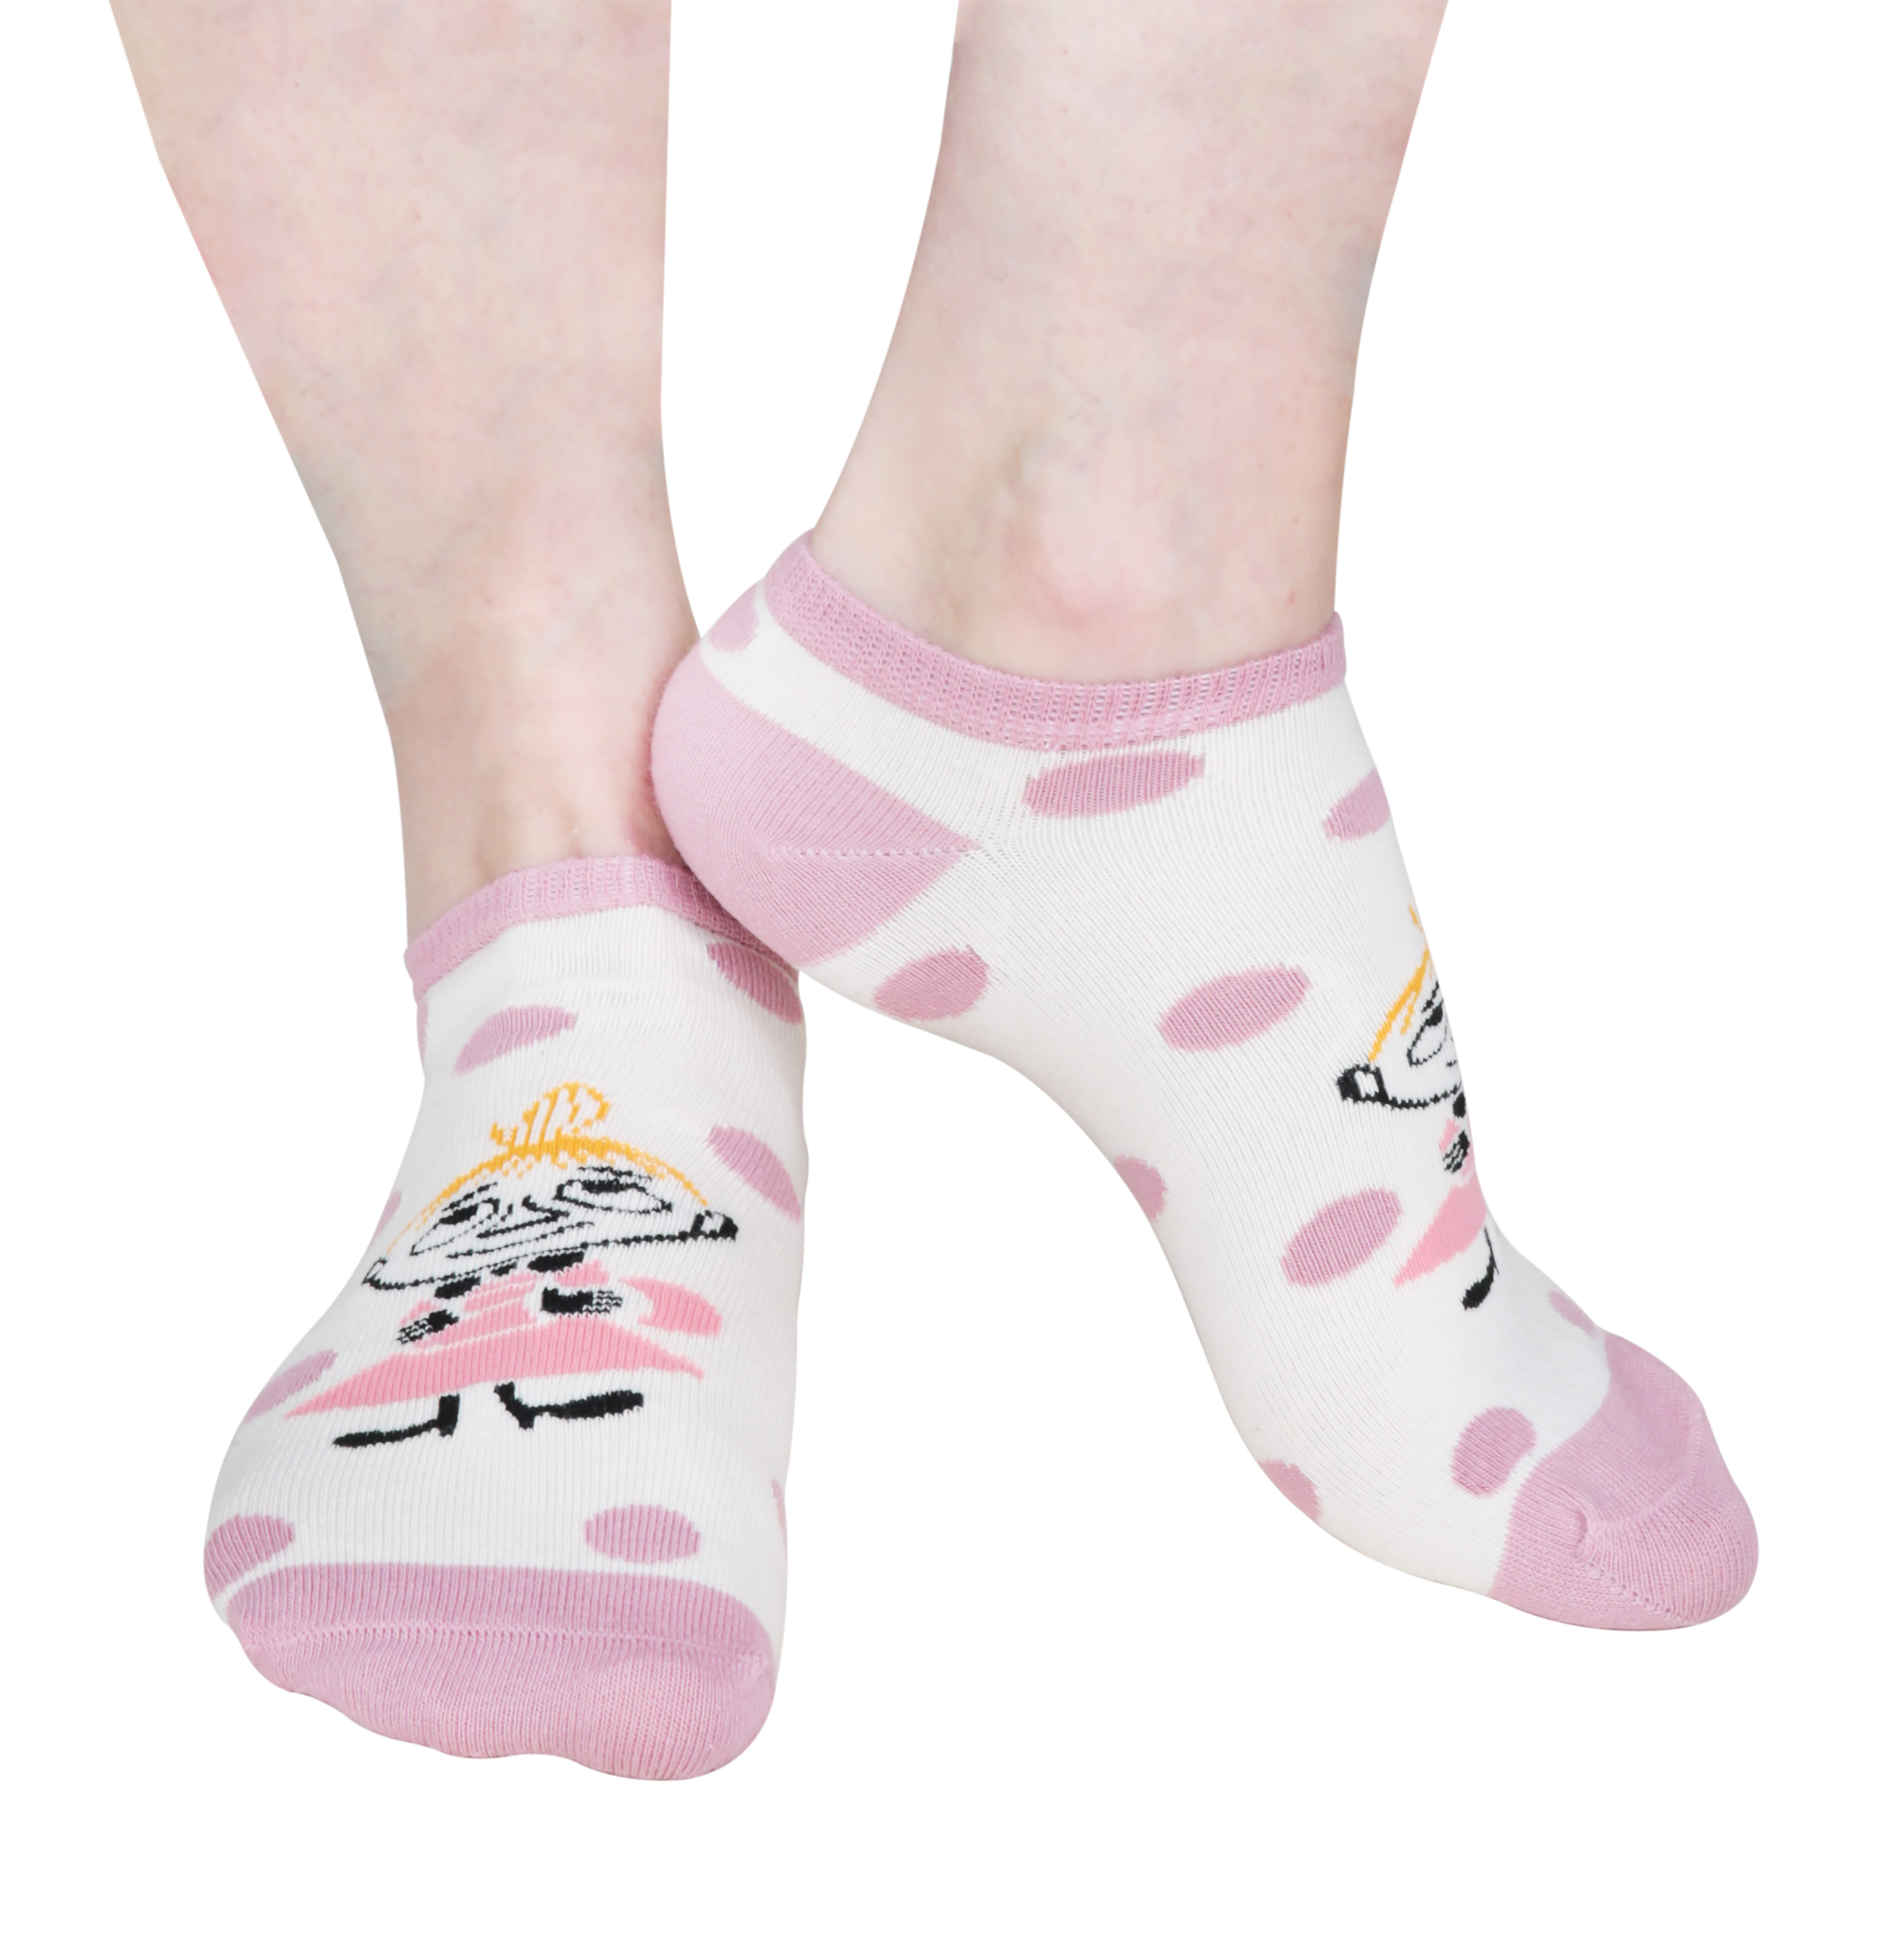 Martinex Moomin Little My Dots Socks Lilac